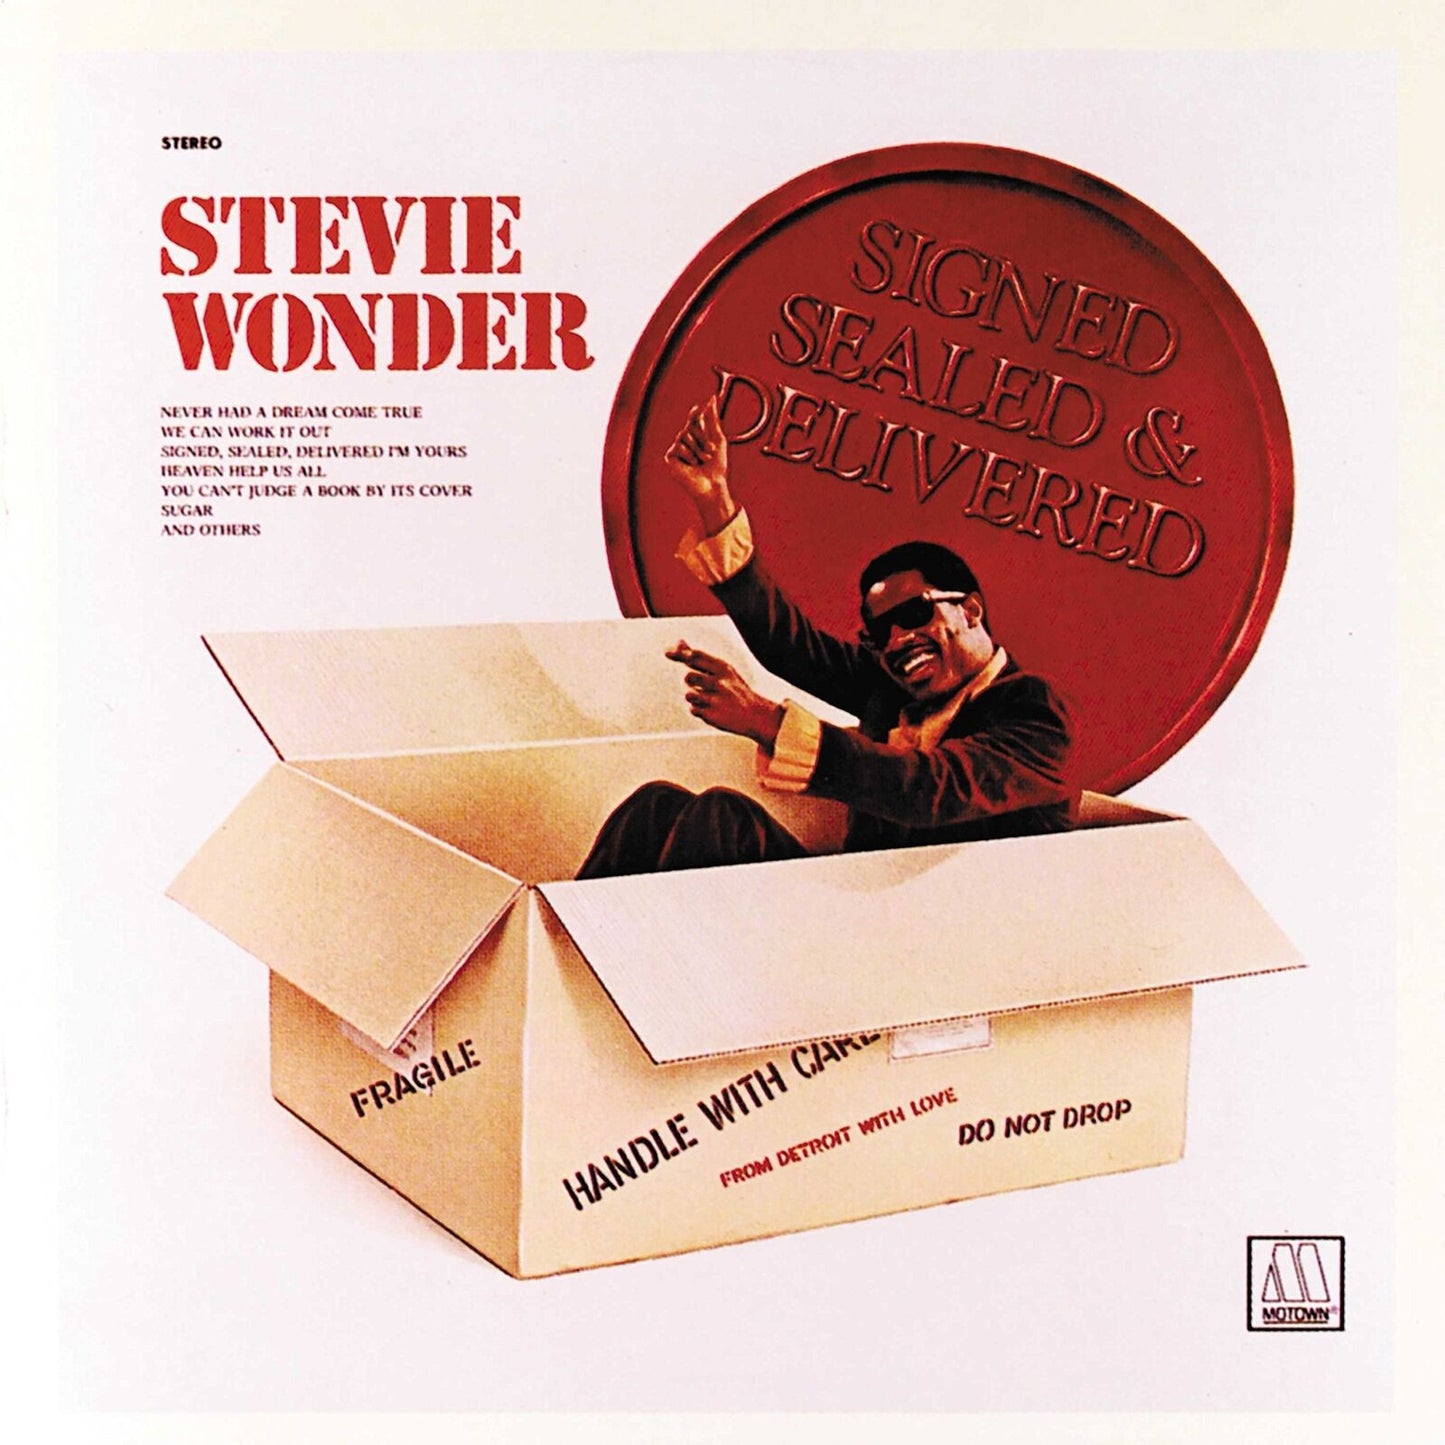 STEVIE WONDER - SIGNED, SEALED & DELIVERED - VINYL LP